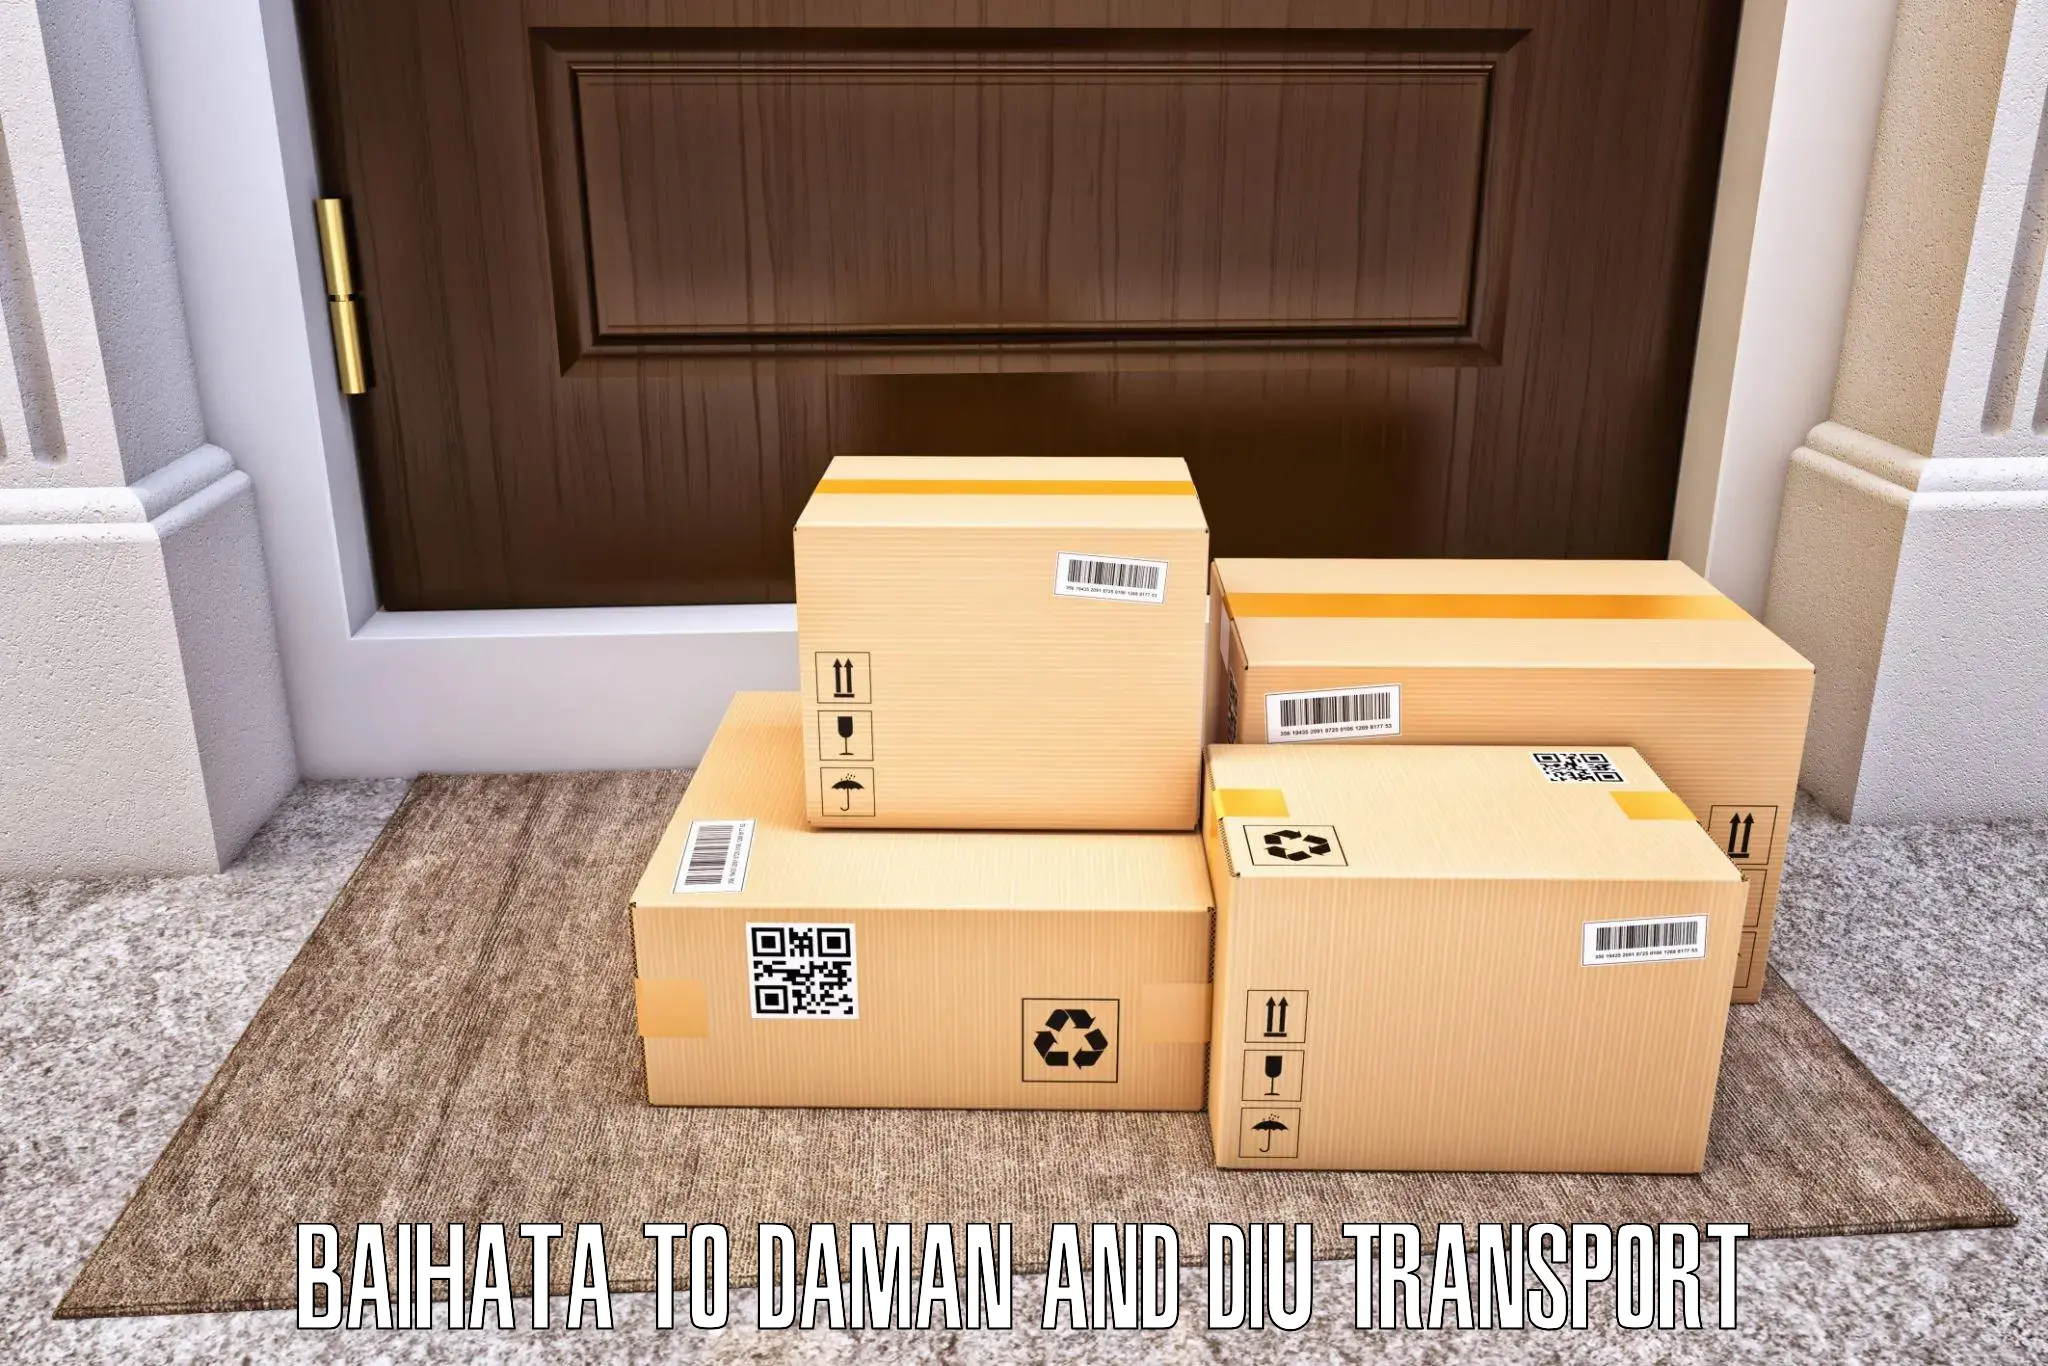 Logistics transportation services Baihata to Daman